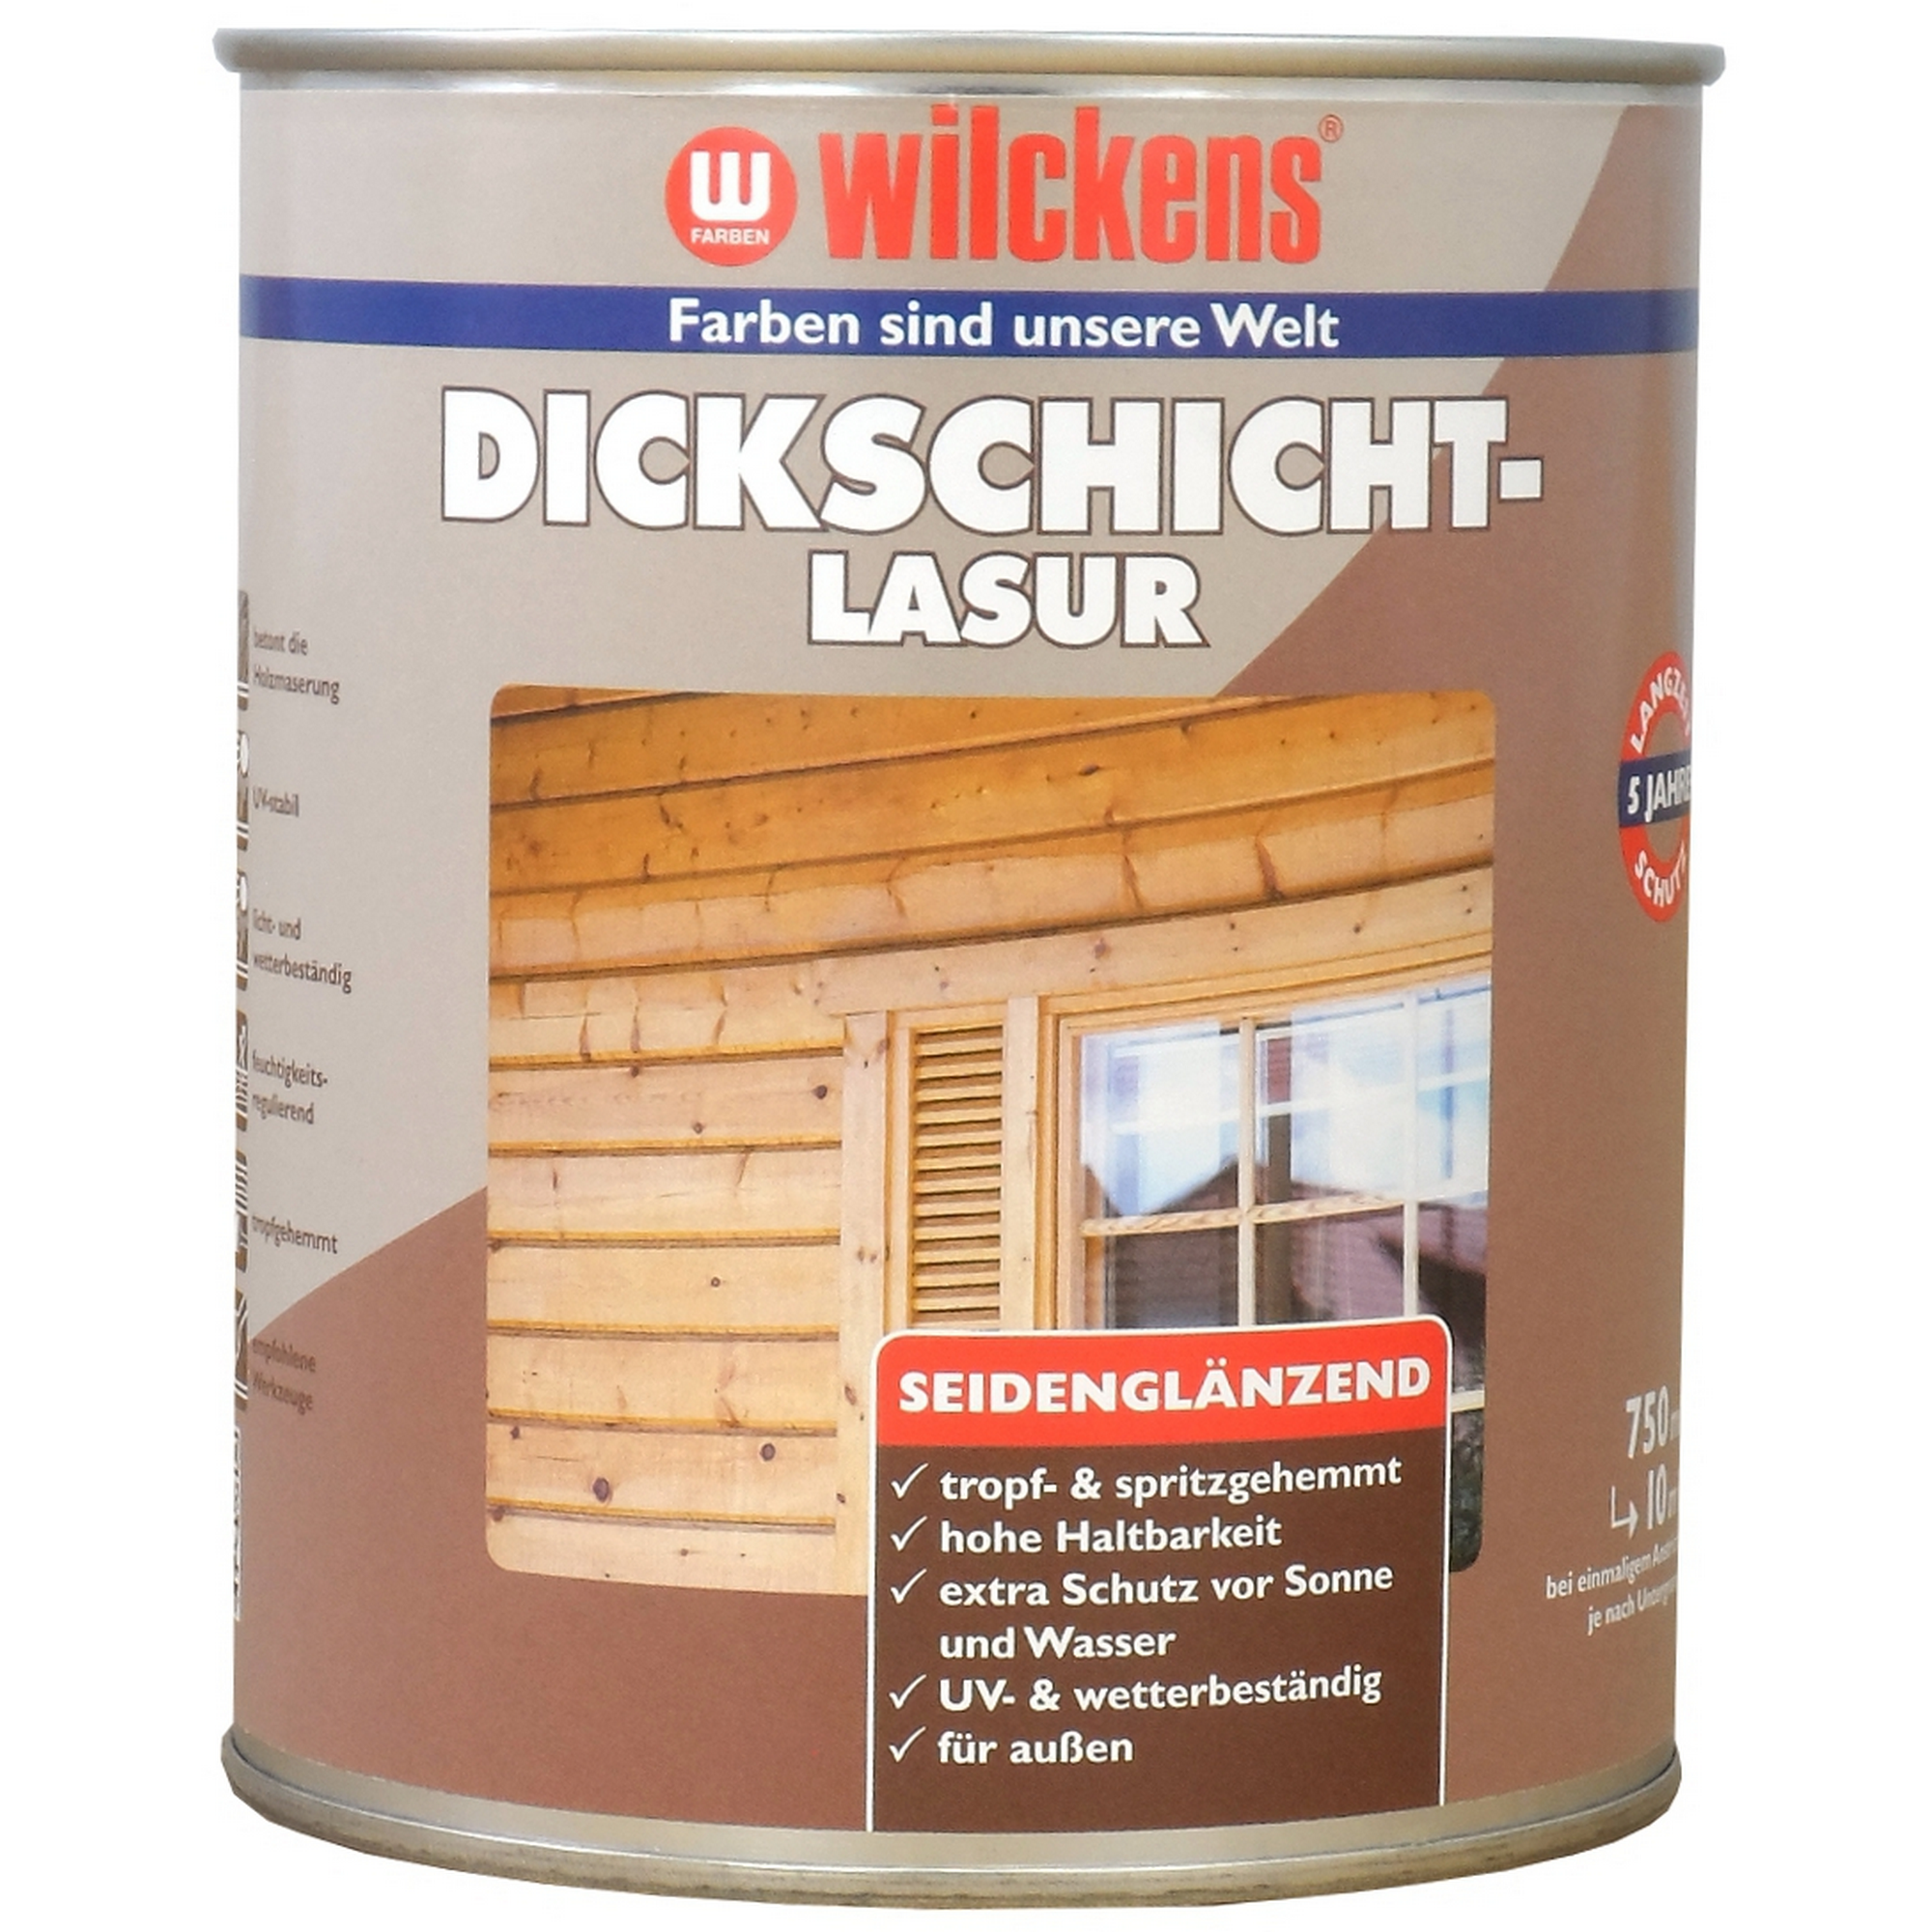 Dickschichtlasur farblos 750 ml + product picture